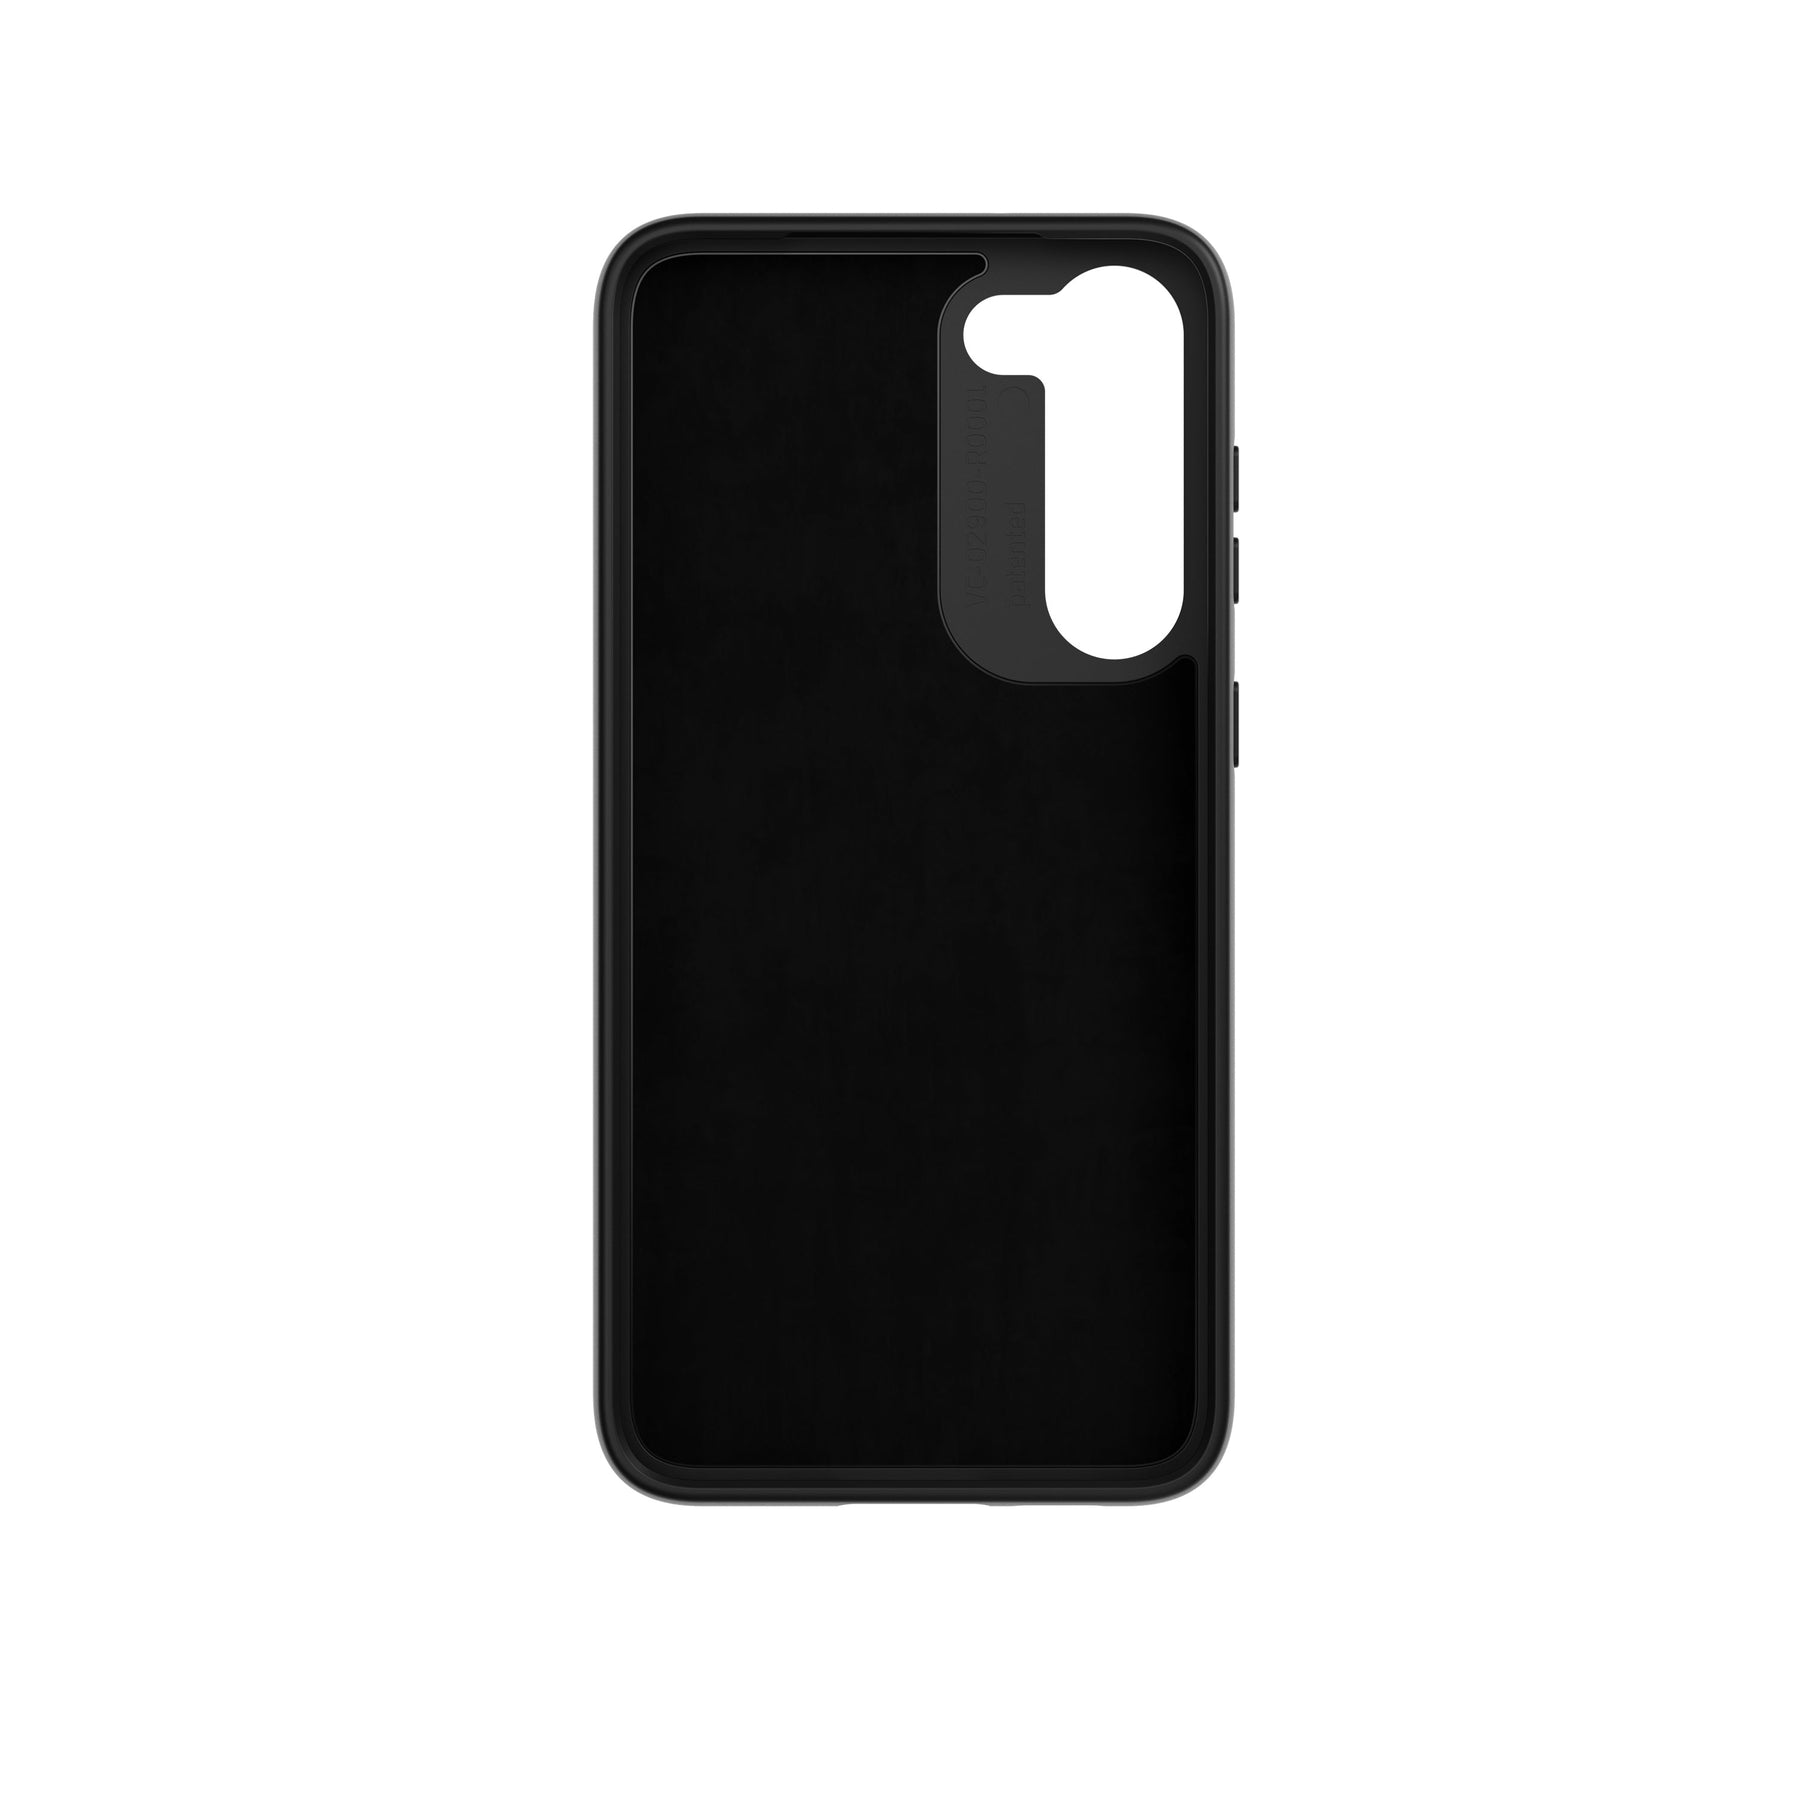 Samsung S20 VACUUM magnetic smartphone case